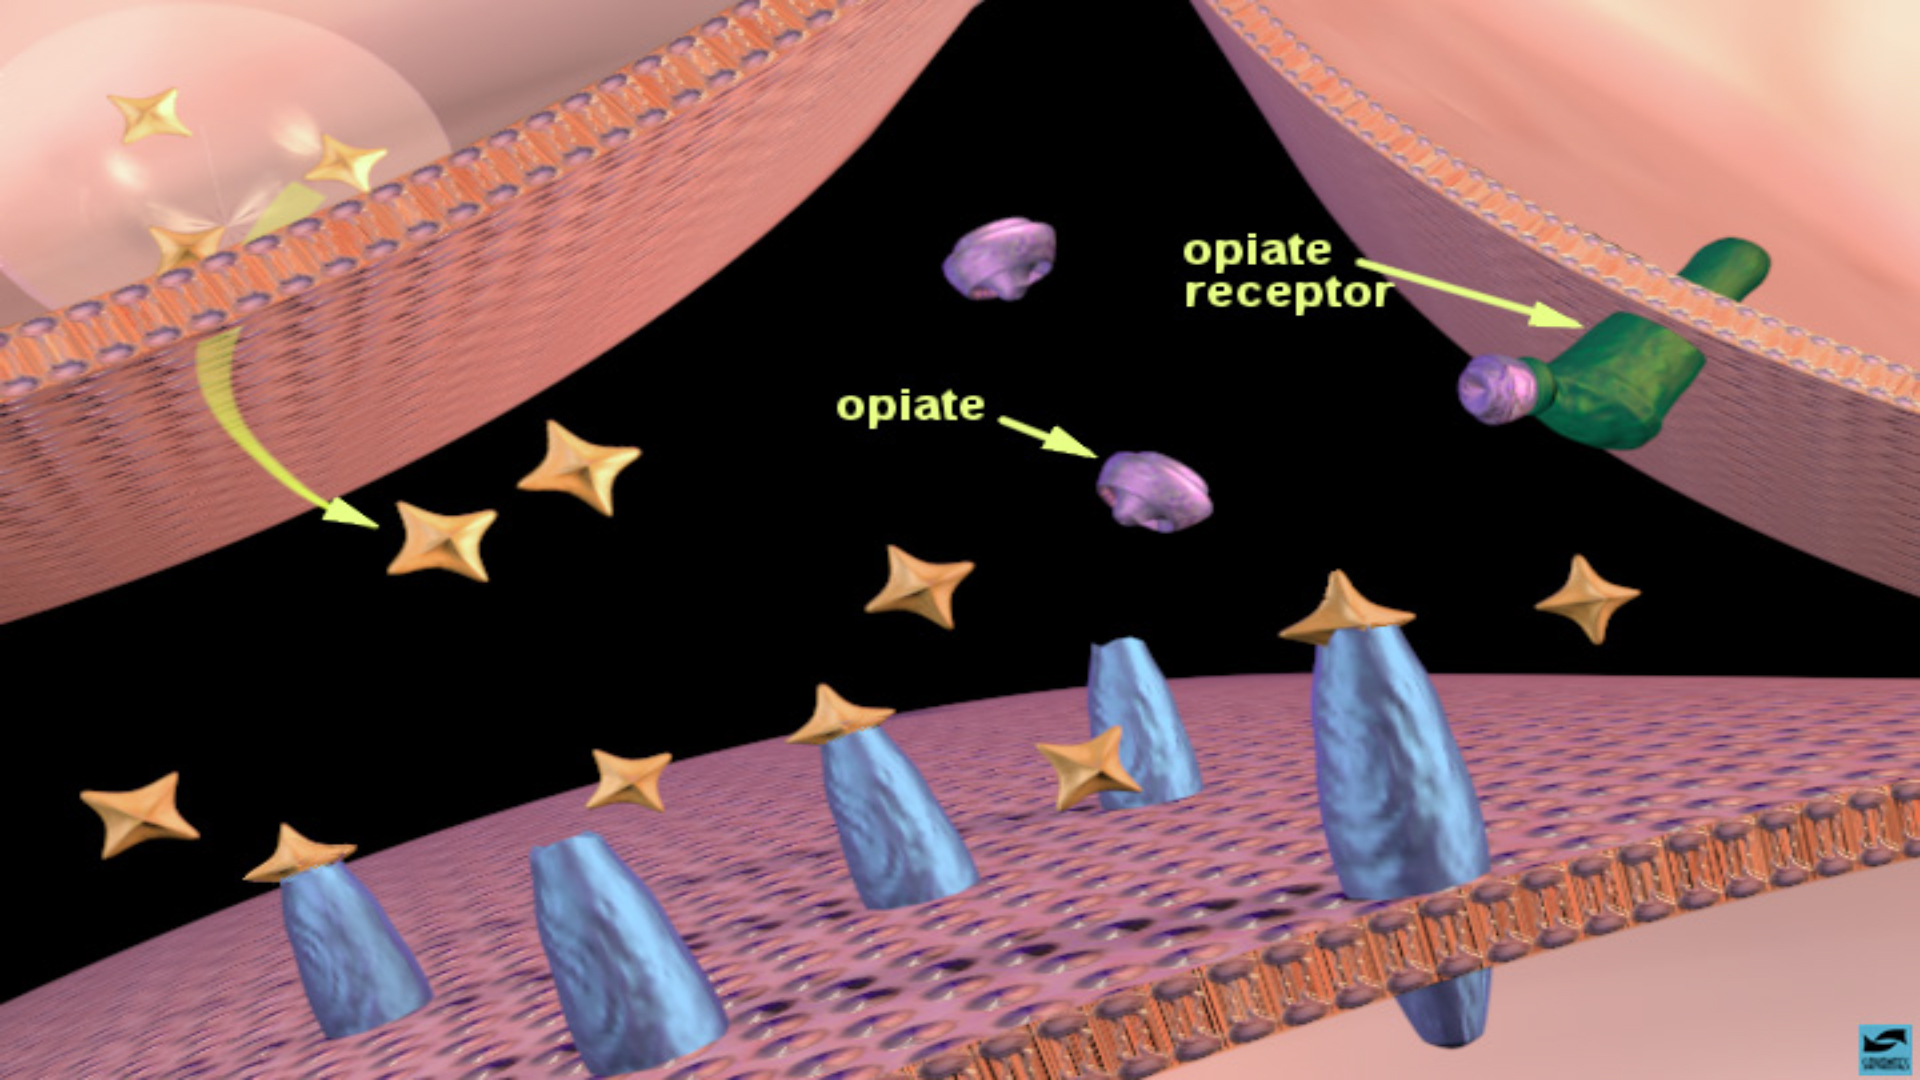 Opiates binding to opiate receptors in the nucleus accumbens: increased dopamine release. 